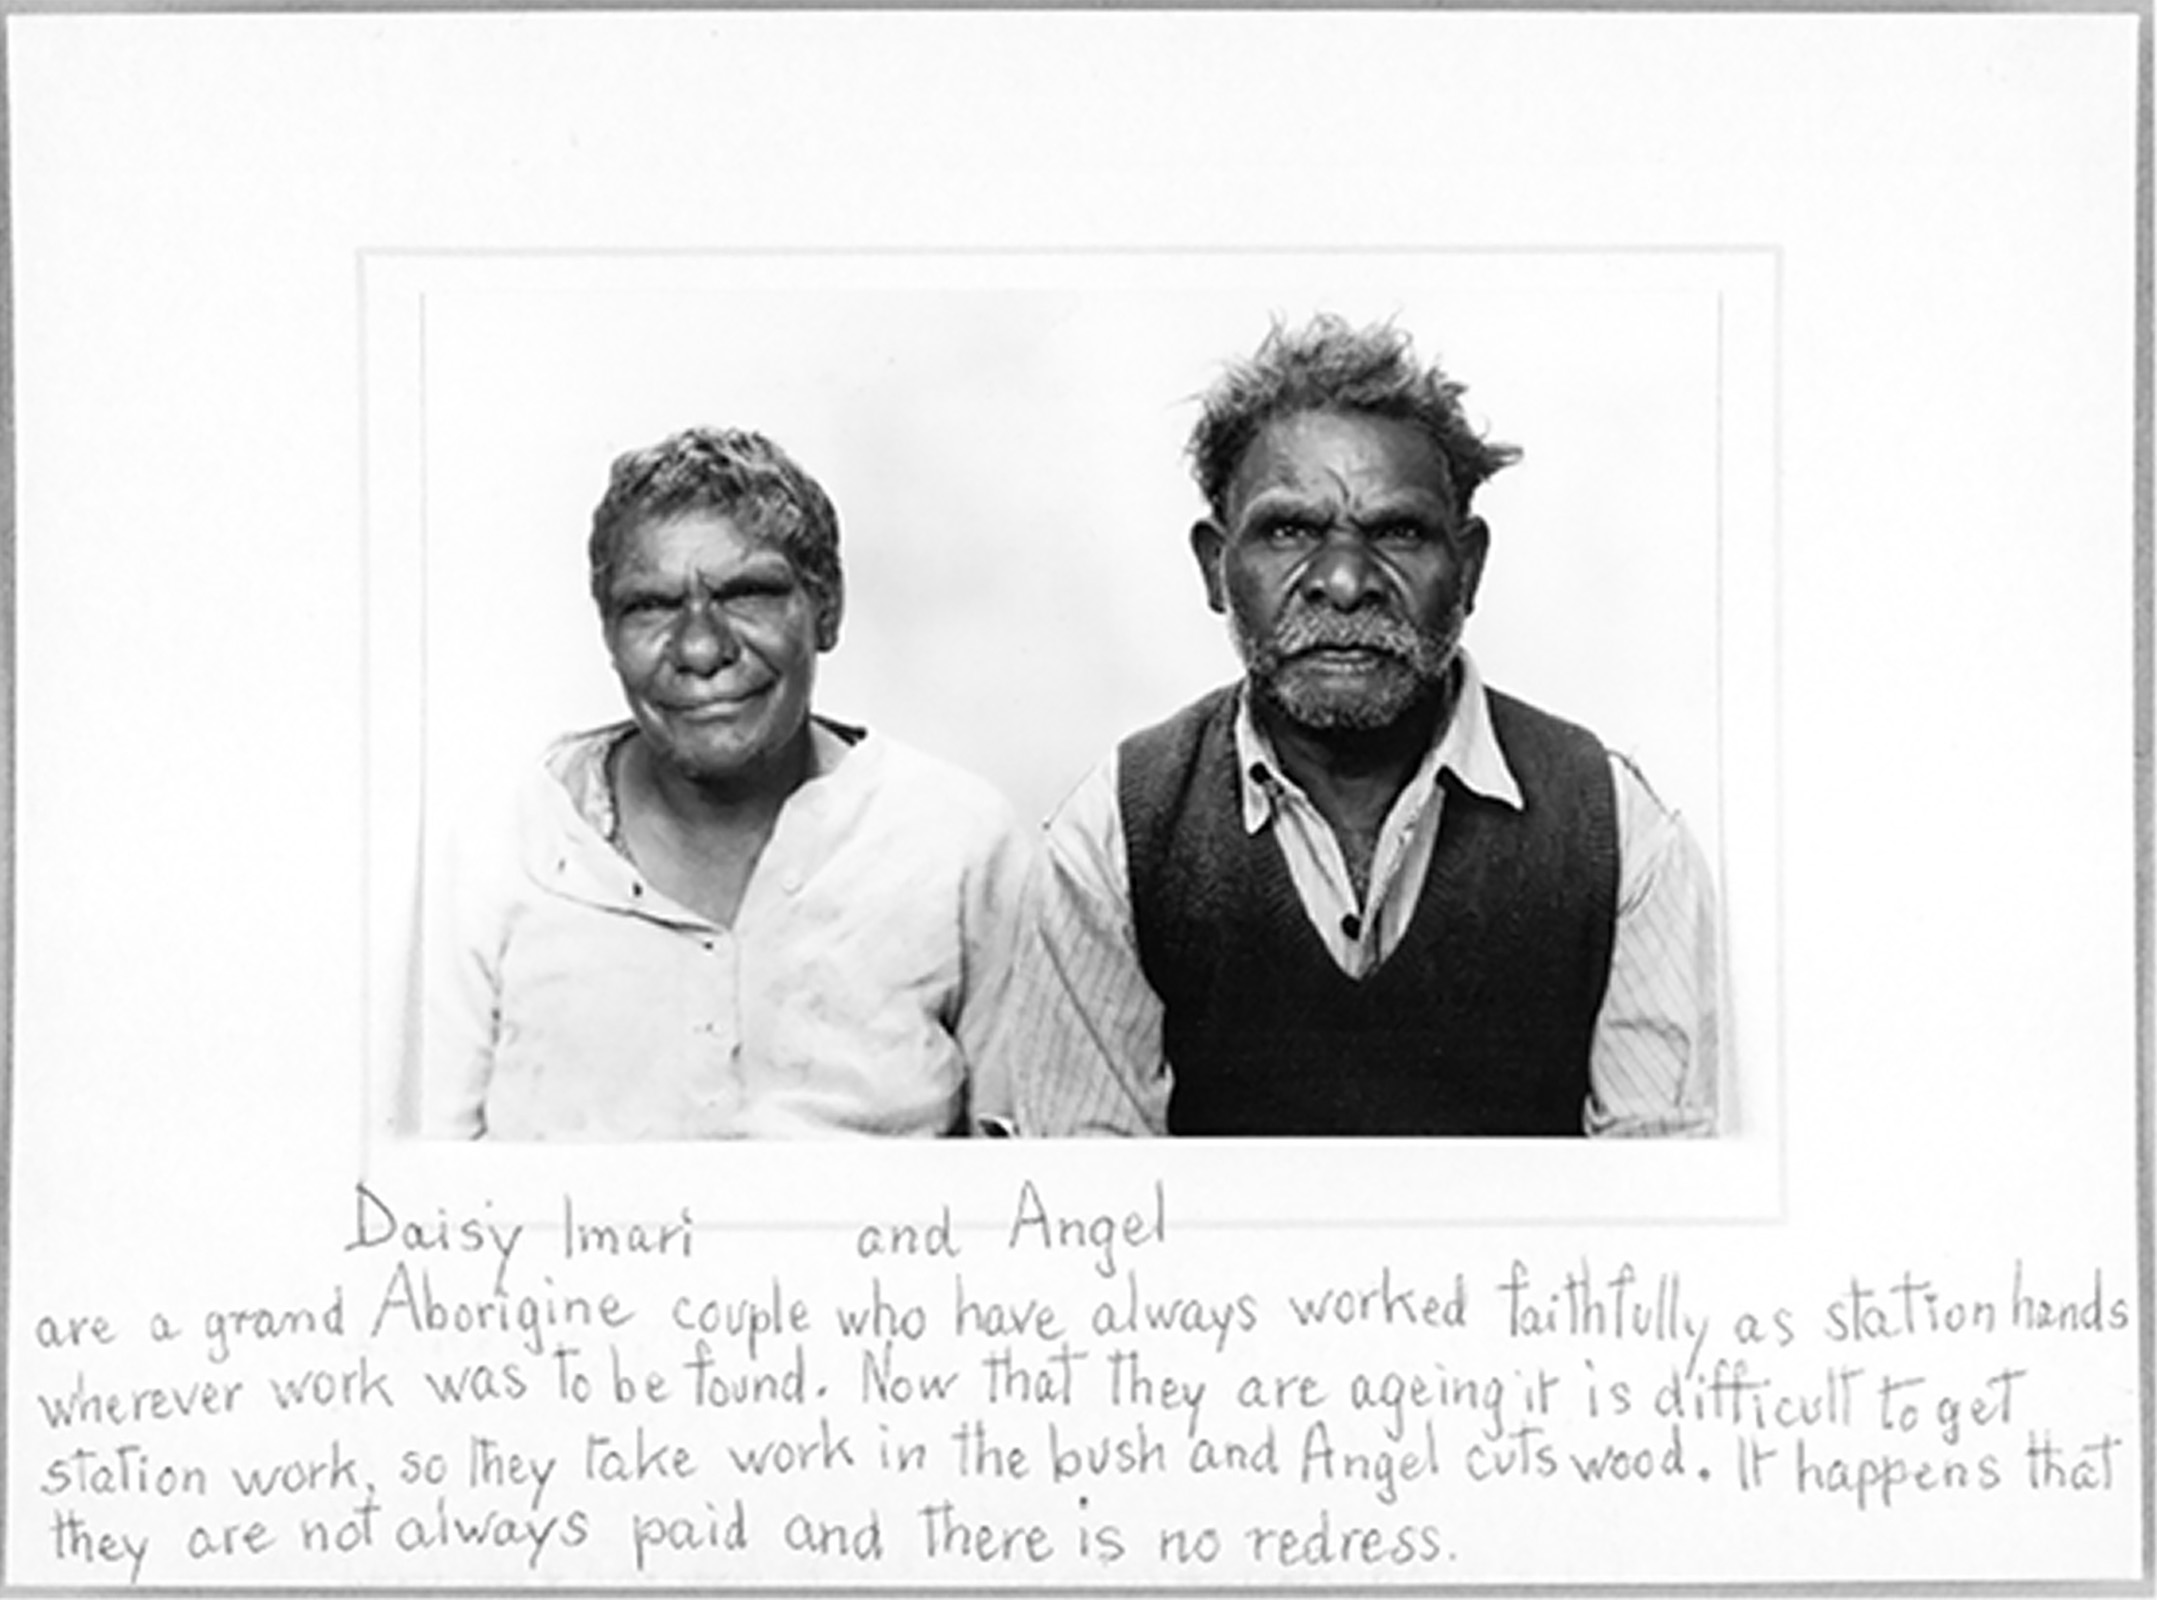 Daisy and Angel Imari, Kalgoorlie, 1960